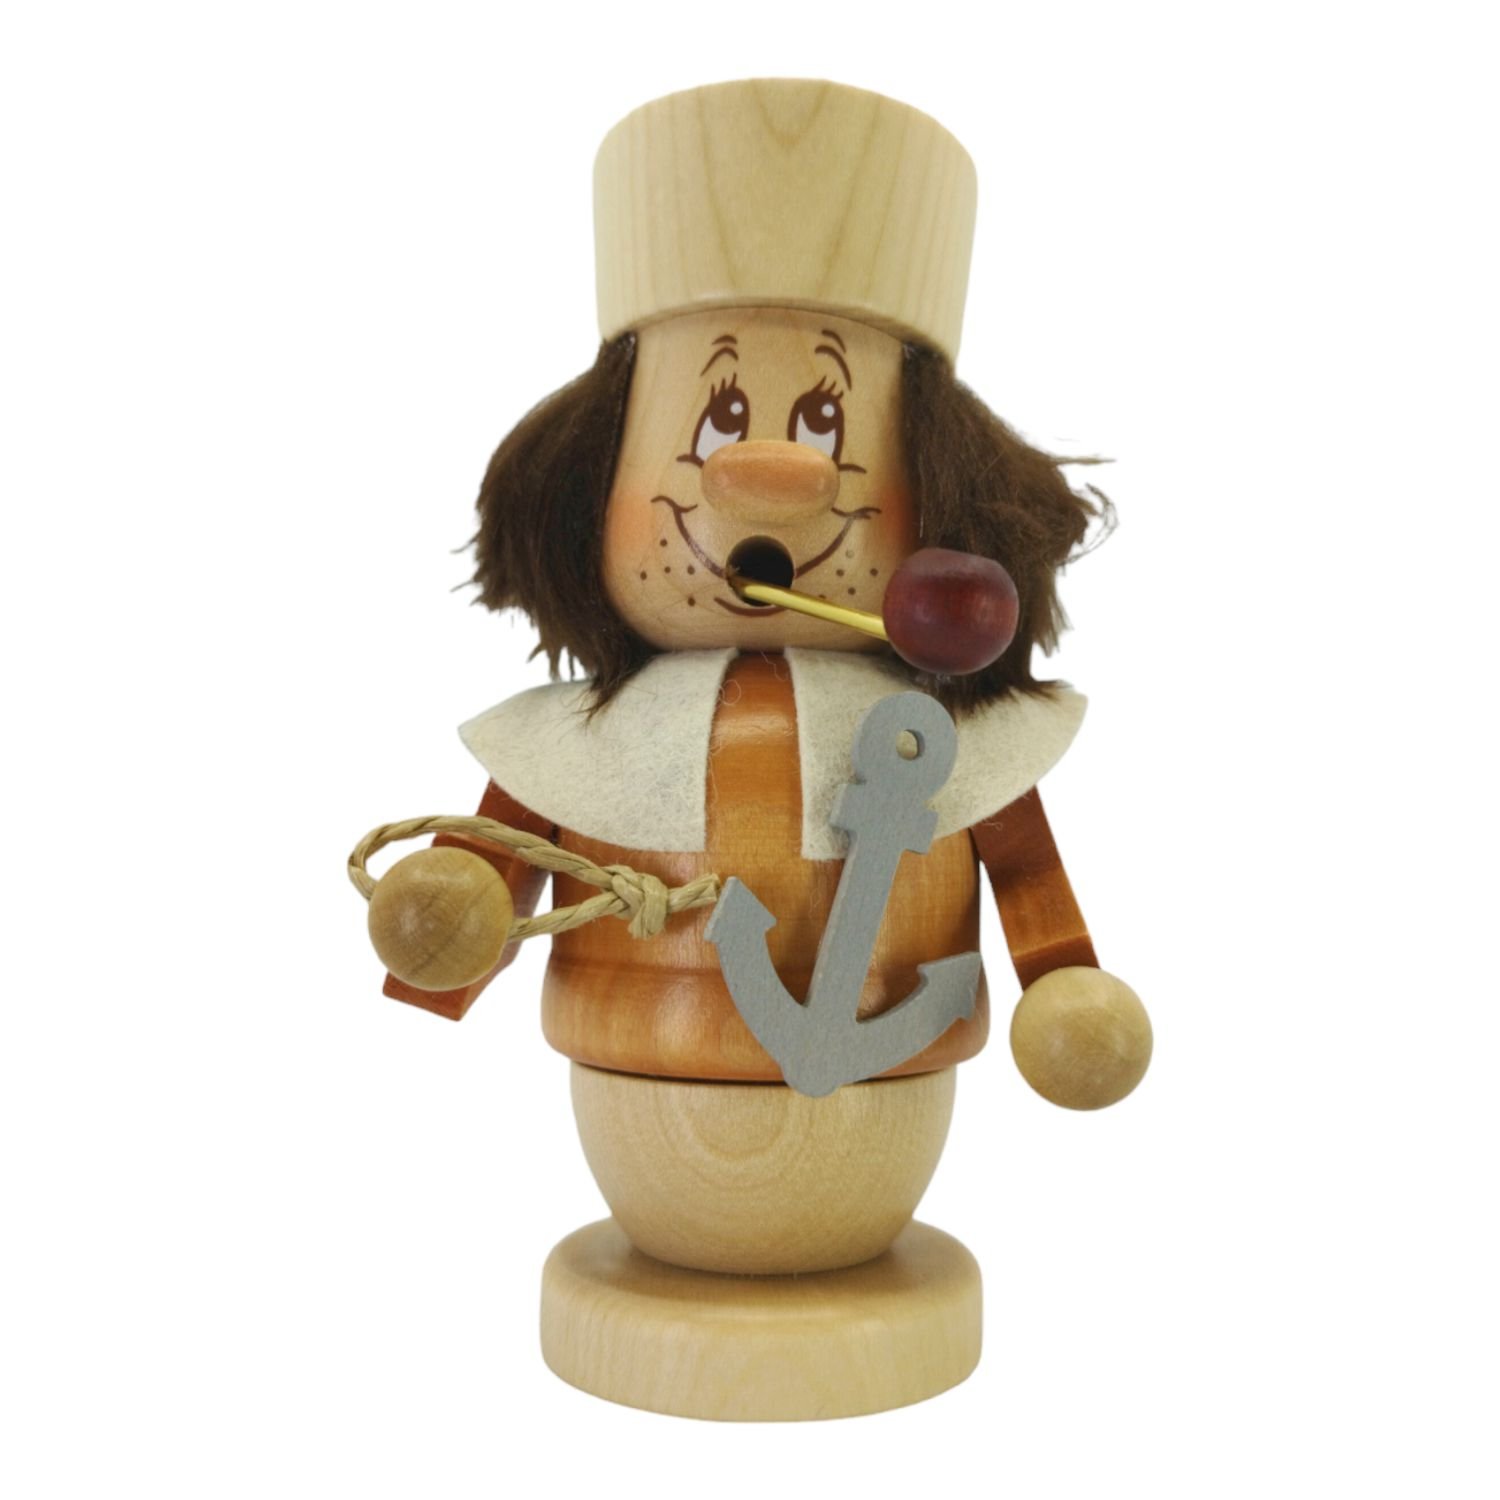 Smoker mini gnome sailor